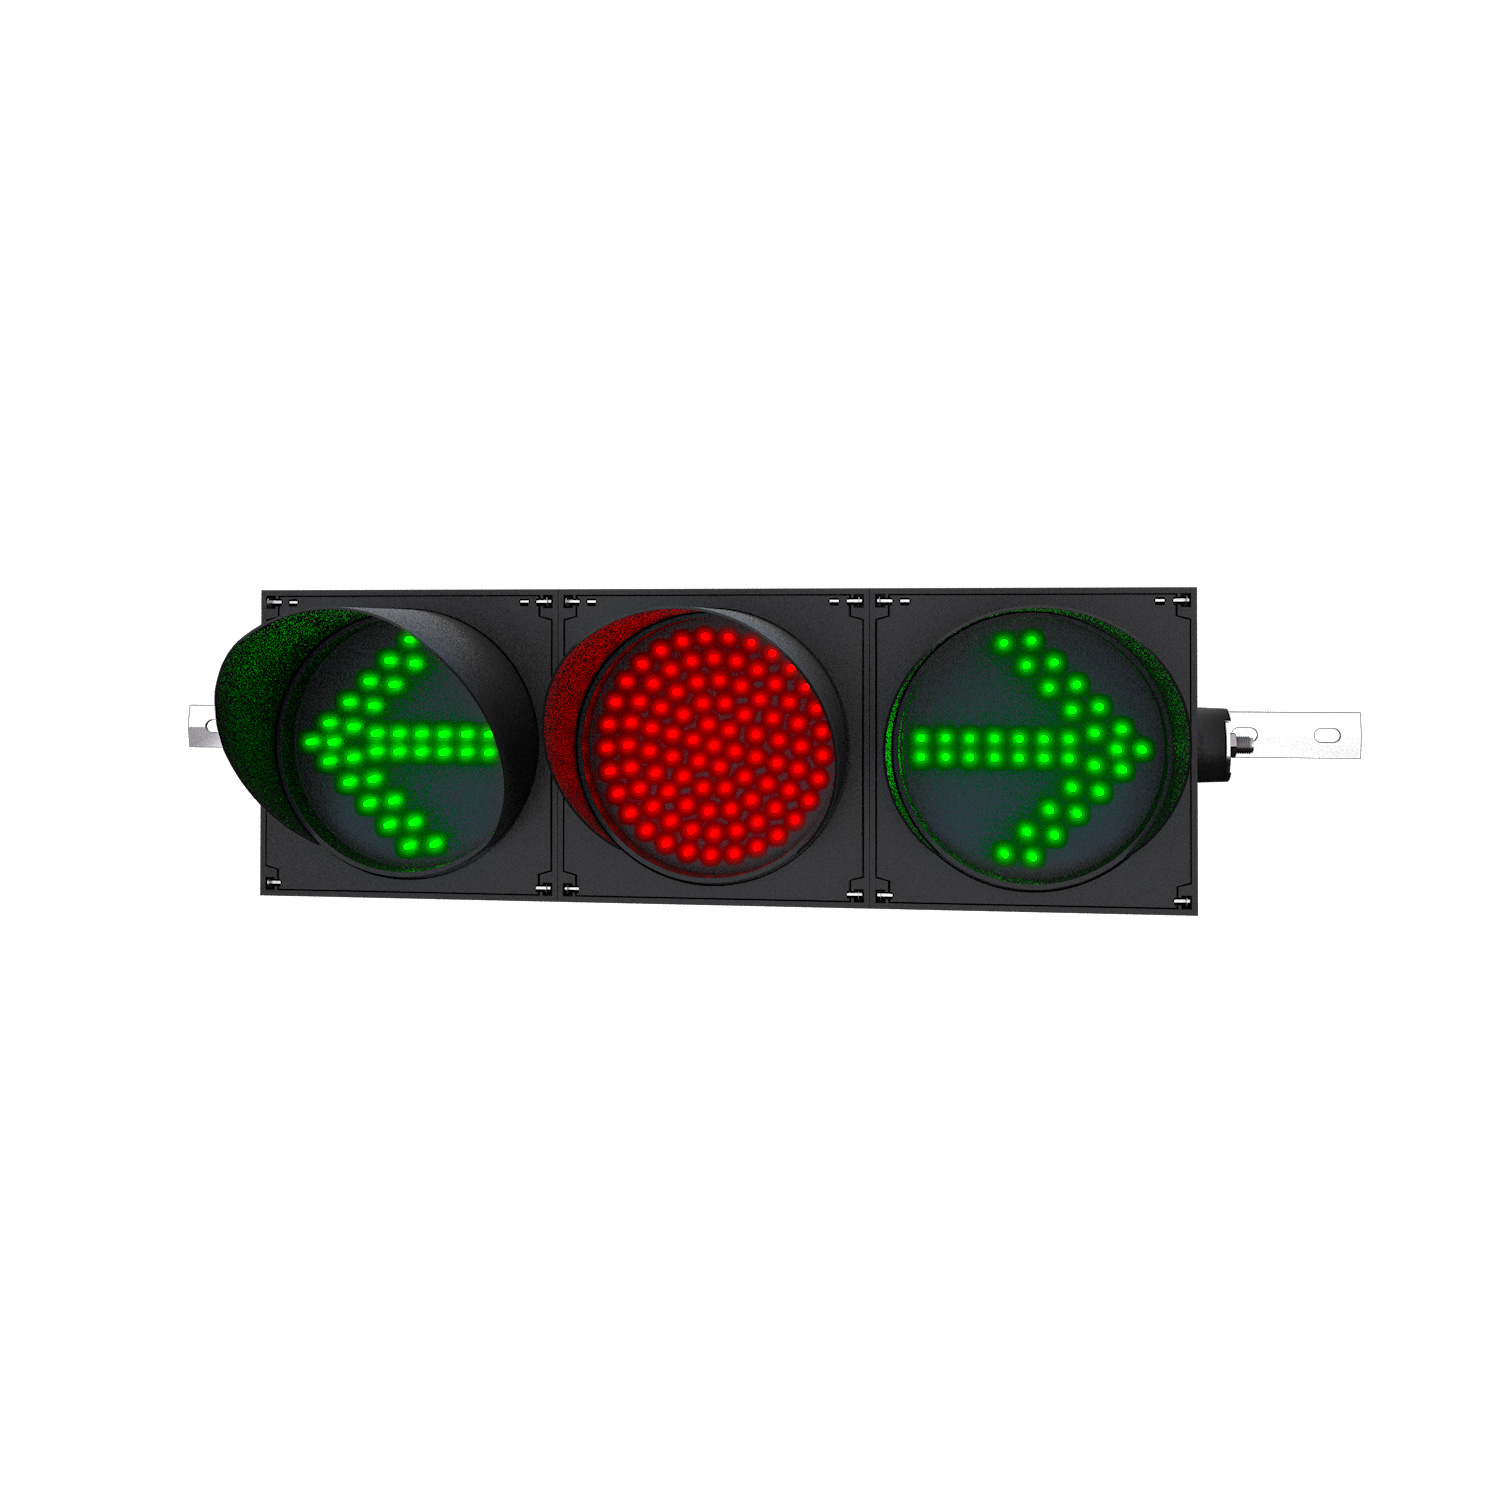 FUNK-Ampeln grün(Pfeil)/rot/grün(Pfeil) , Größe der Verkehrsampeln